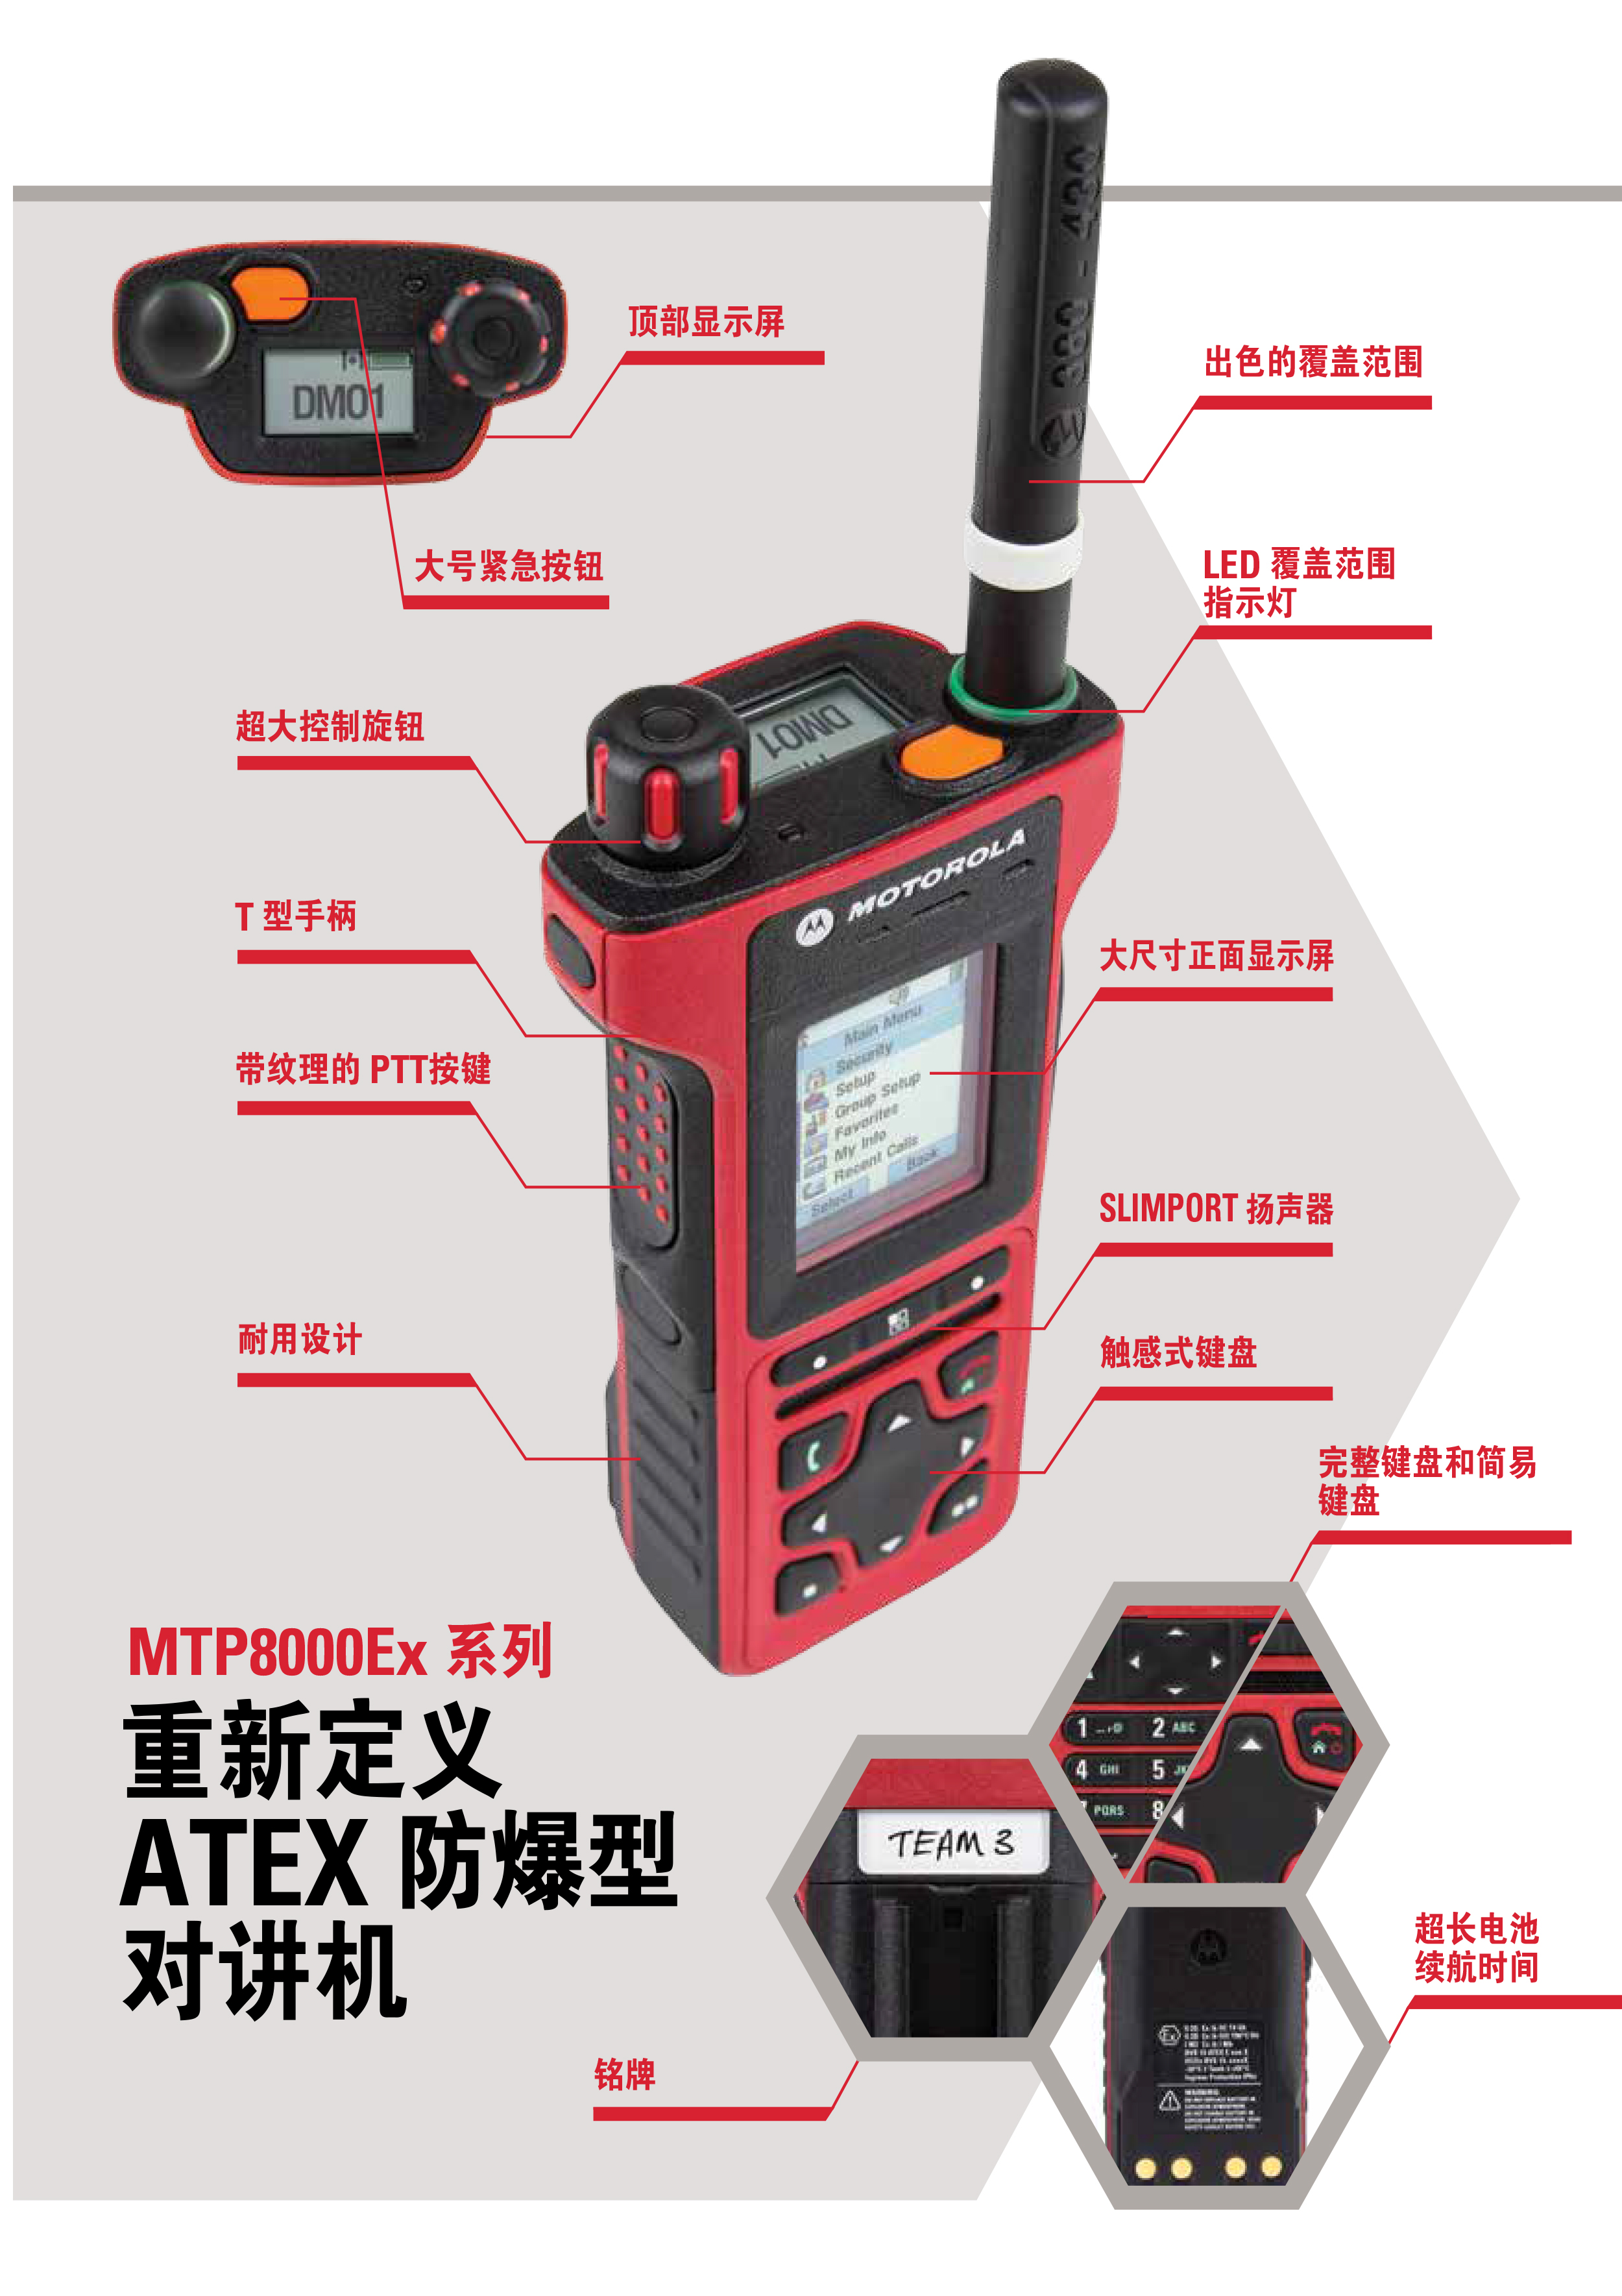 MTP8550Ex系列TETRA-ATEX-防爆型对讲机彩页_08